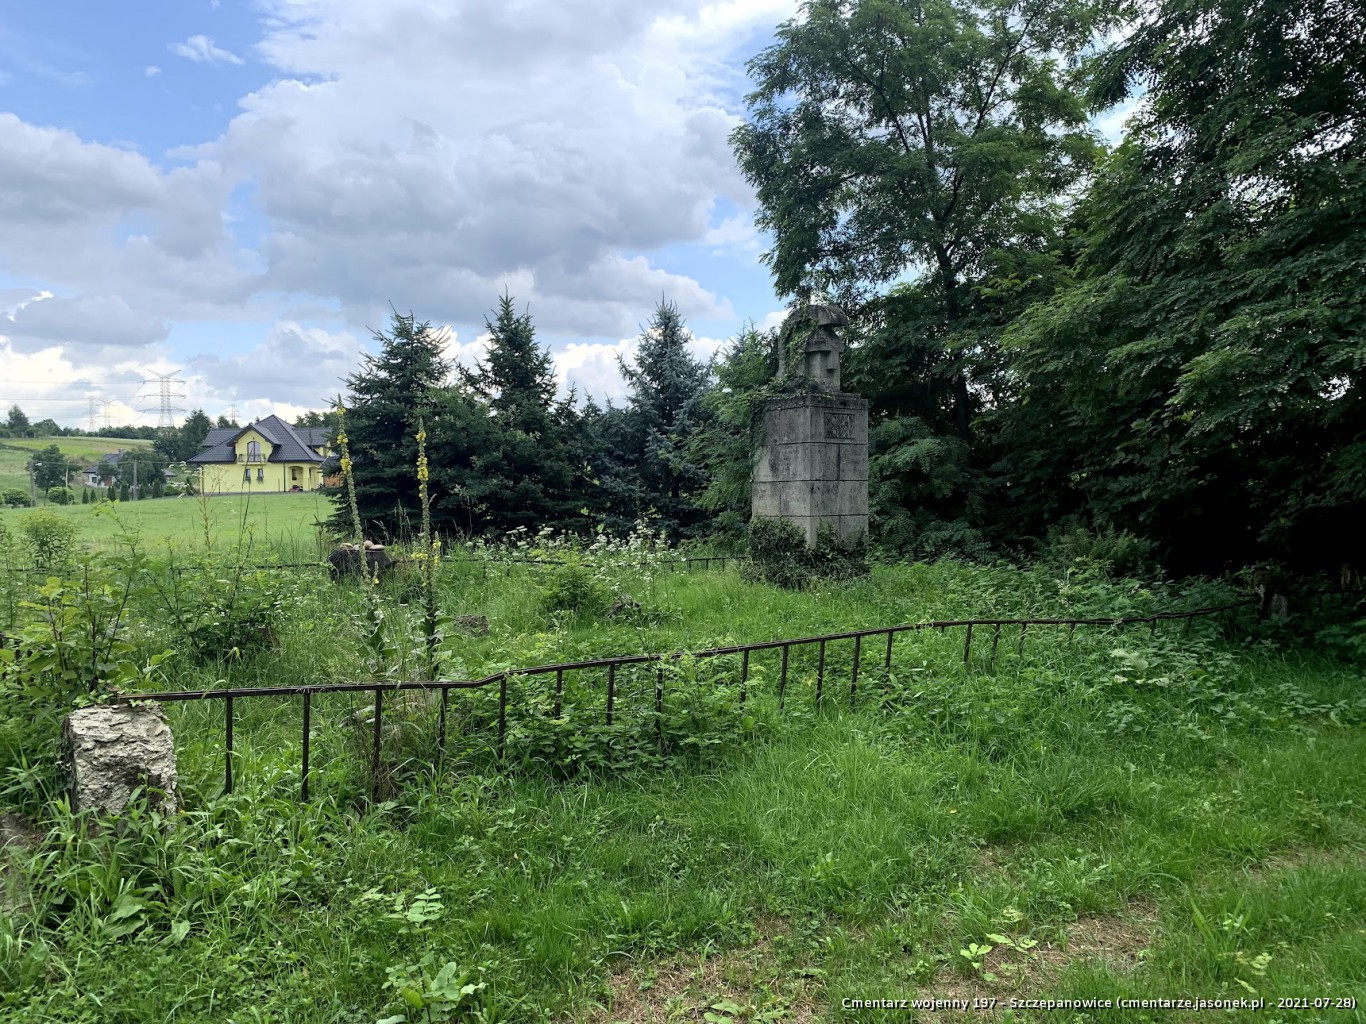 Cmentarz wojenny 197 - Szczepanowice